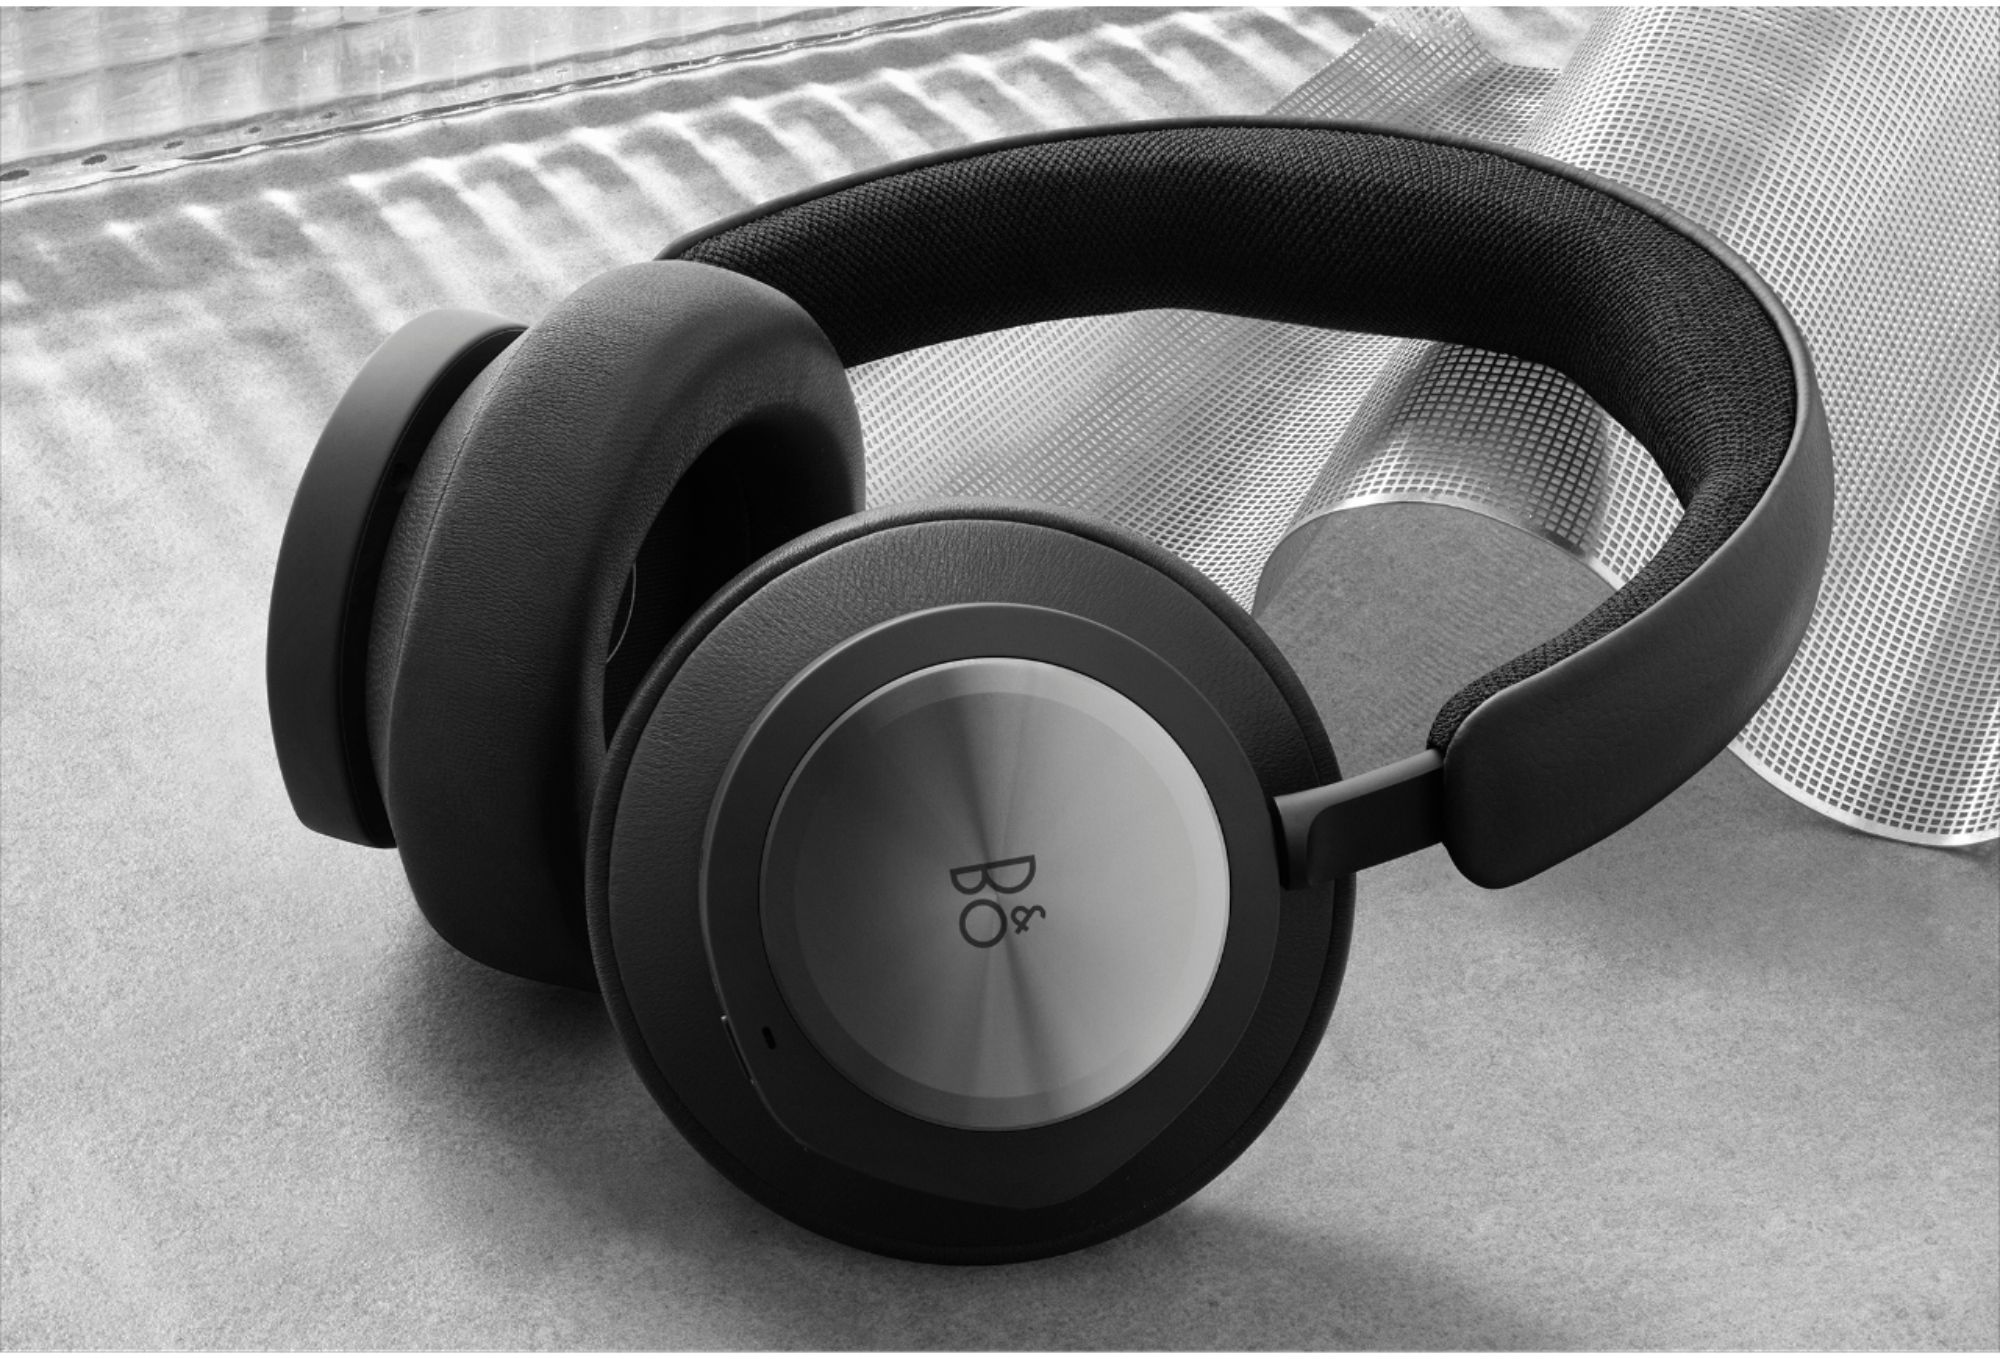 Gemoedsrust litteken desinfecteren Bang & Olufsen Beoplay Portal Xbox Wireless Noise Cancelling Over-the-Ear  Headphones Black Anthracite 3210 - Best Buy